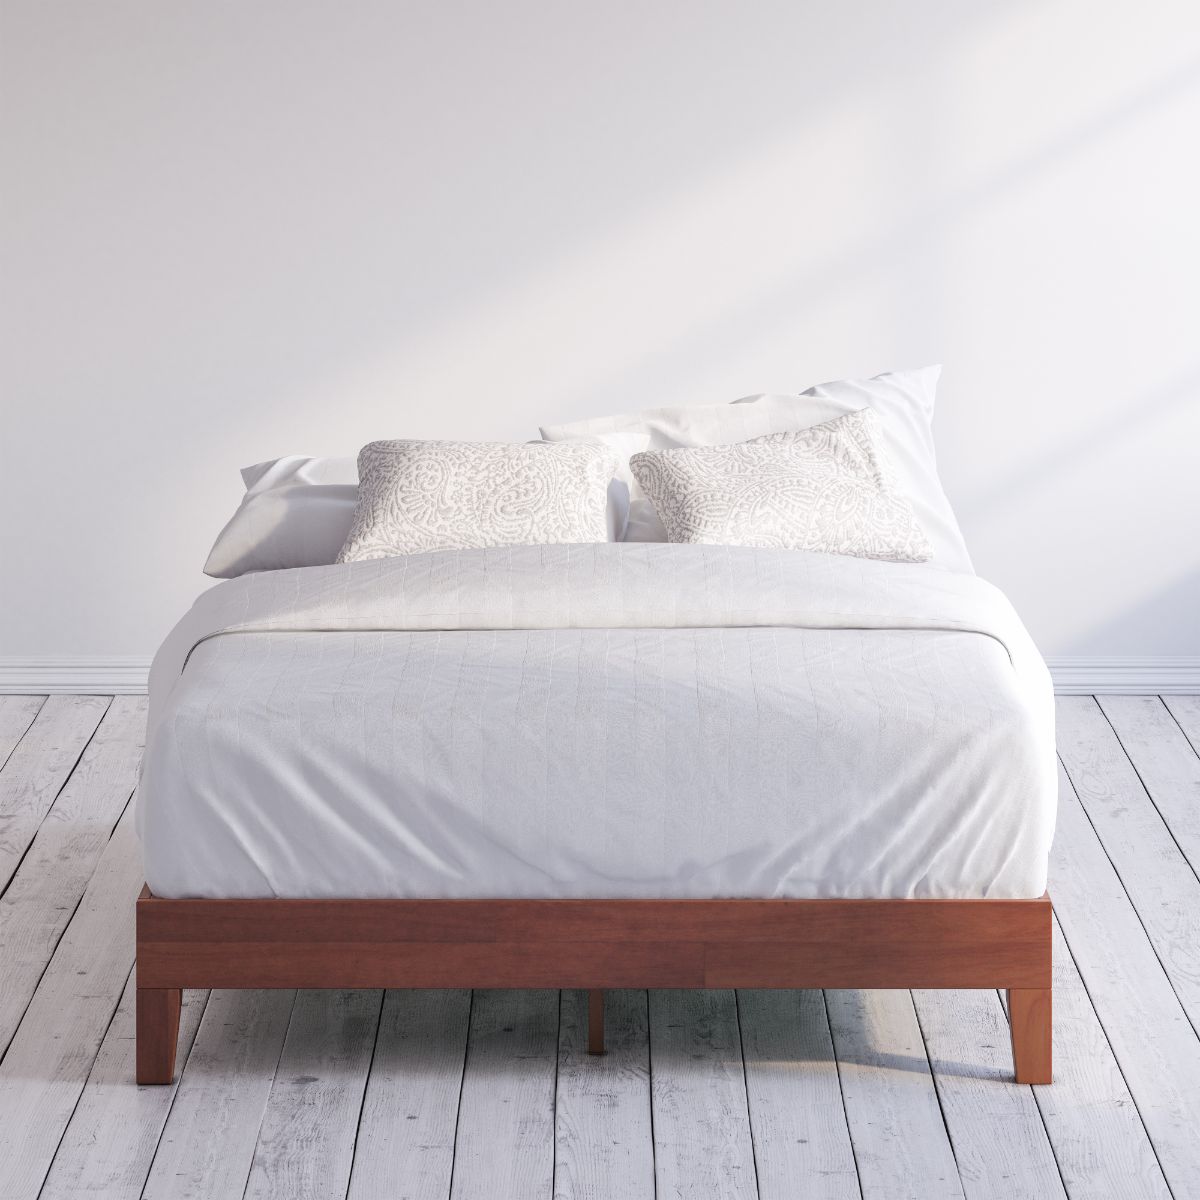 Wen Deluxe Wood Platform Bed Frame , Zinus Twin